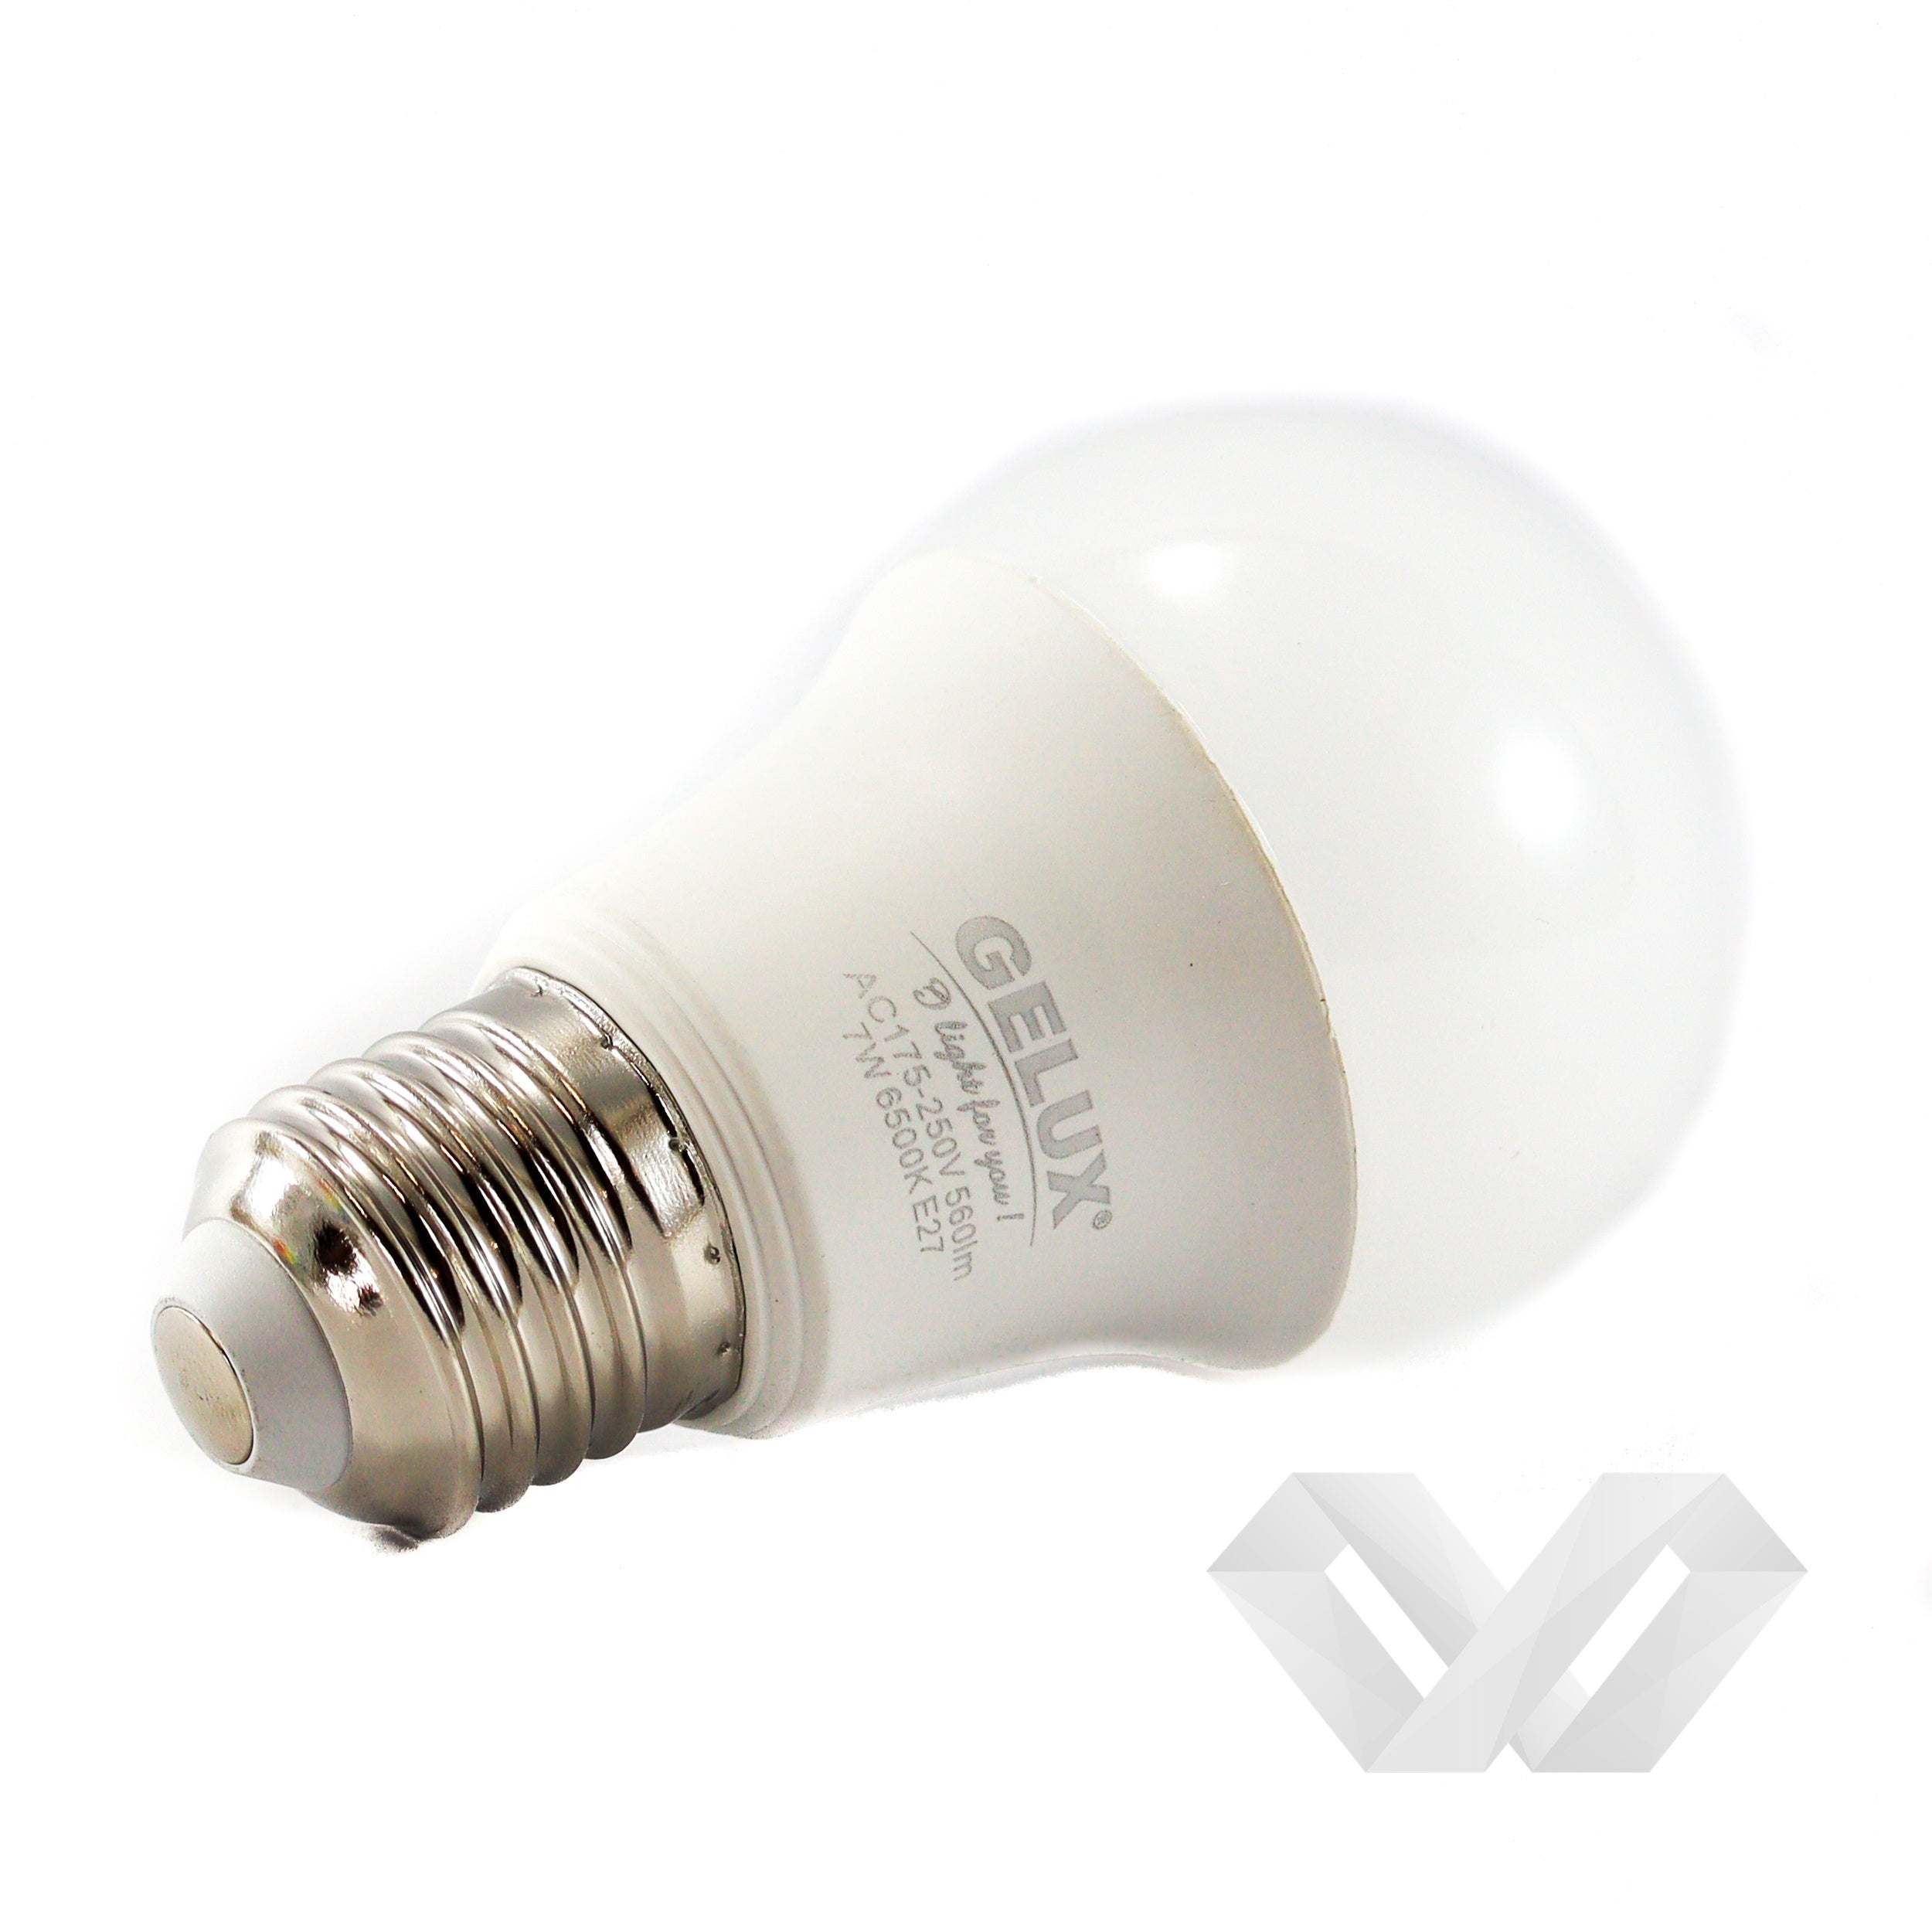 Bec LED 20W E27 Standard ECOLED, echivalent 160W lumină caldă, Gelux